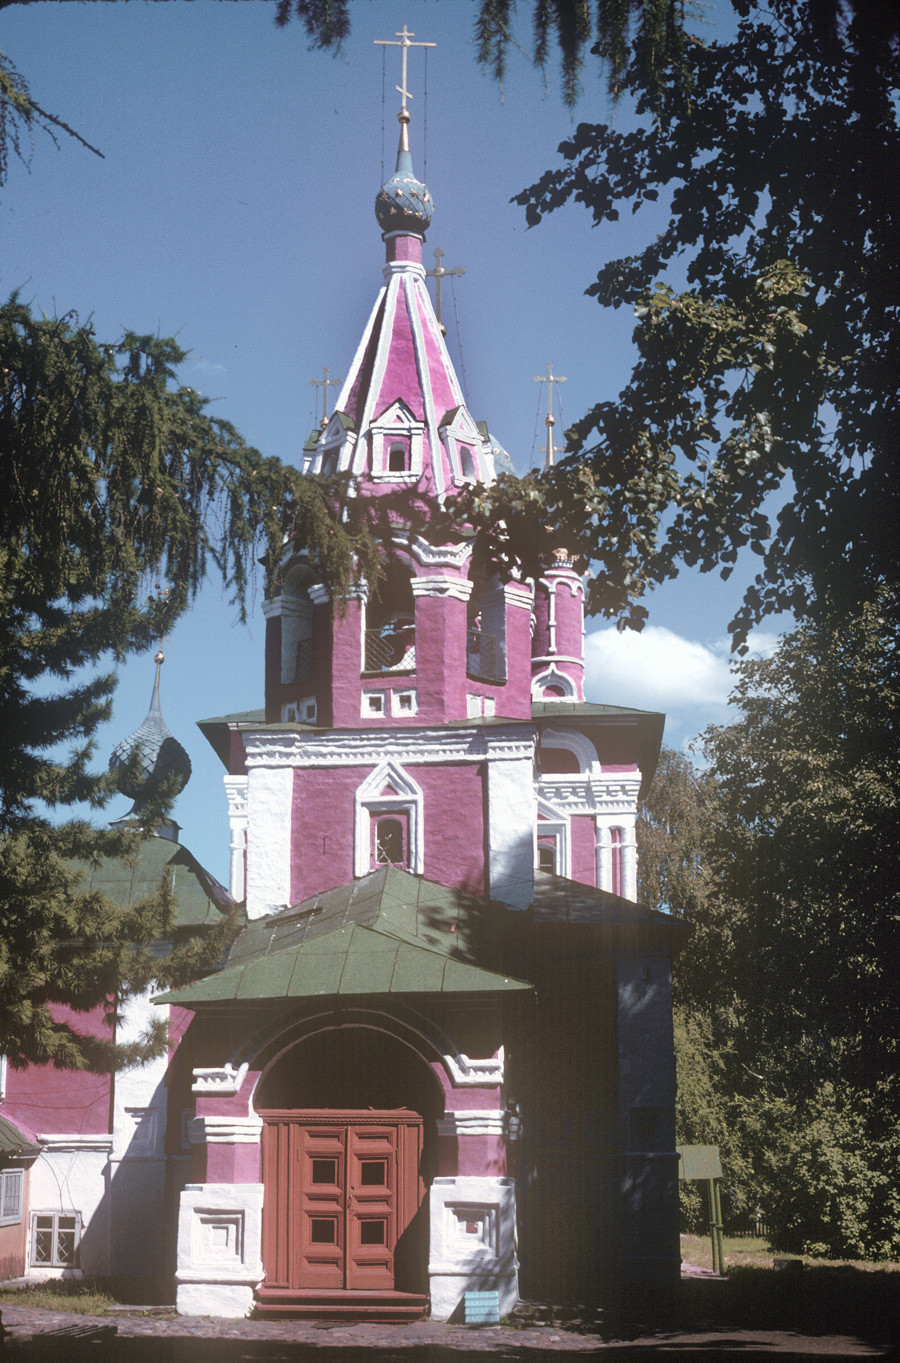 「血の上の聖デミトリオス聖堂」。西側。正門の上に鐘楼が見える。1997年7月30日。